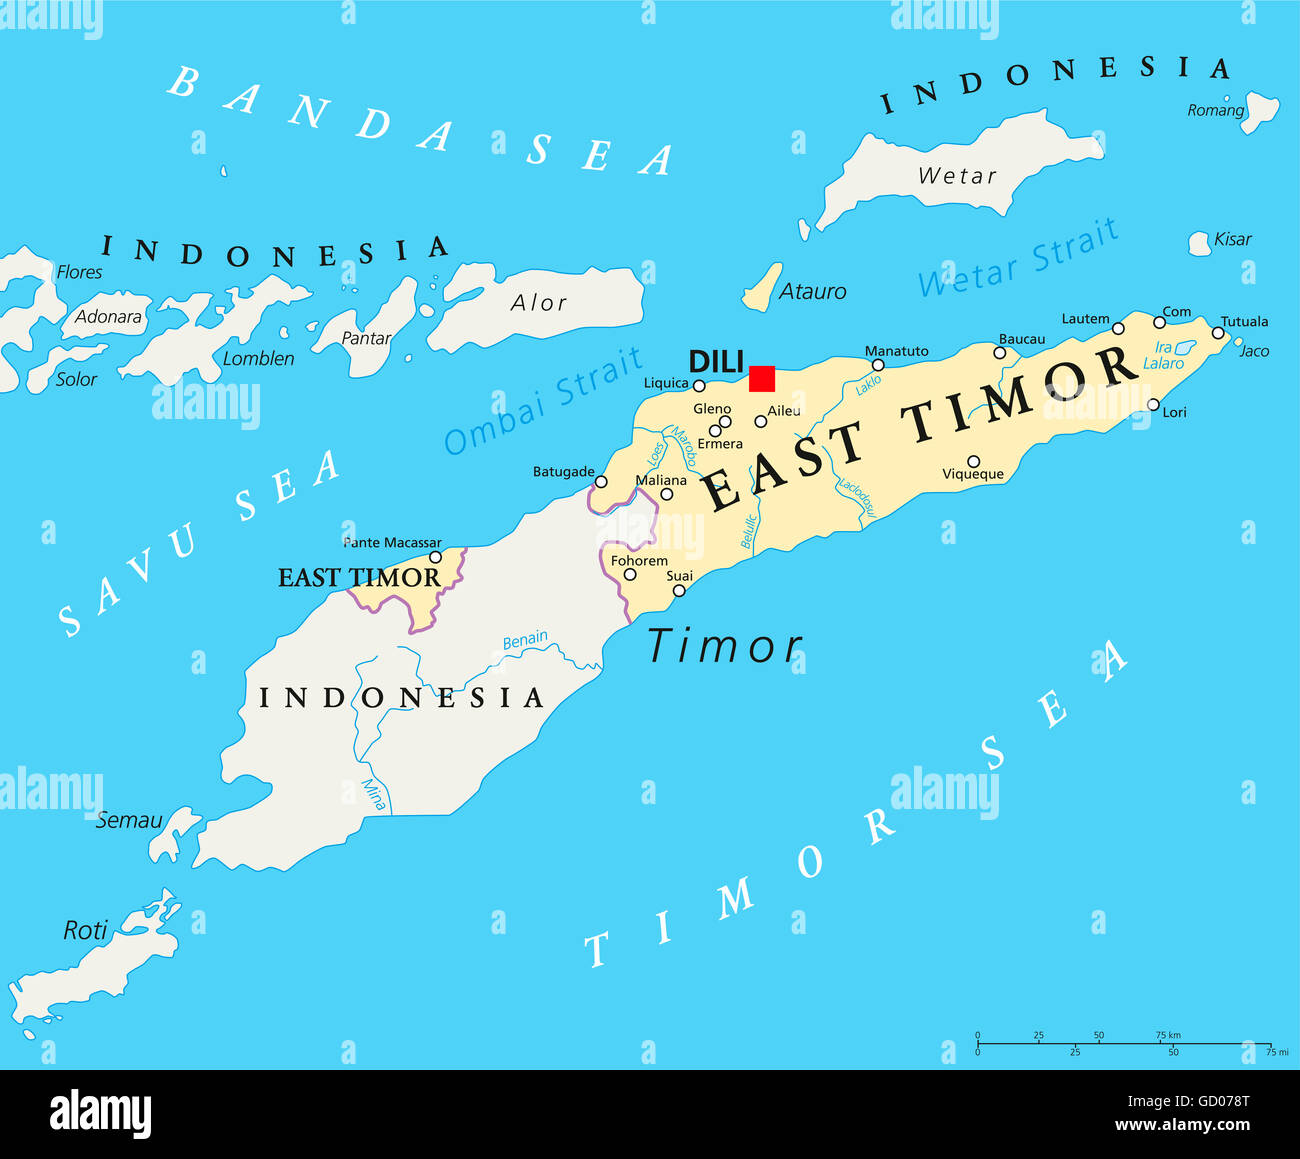 Carte politique du Timor oriental avec capitale Dili, les frontières nationales, les villes importantes et les rivières. Également connu sous le nom de Timor-Leste. Banque D'Images